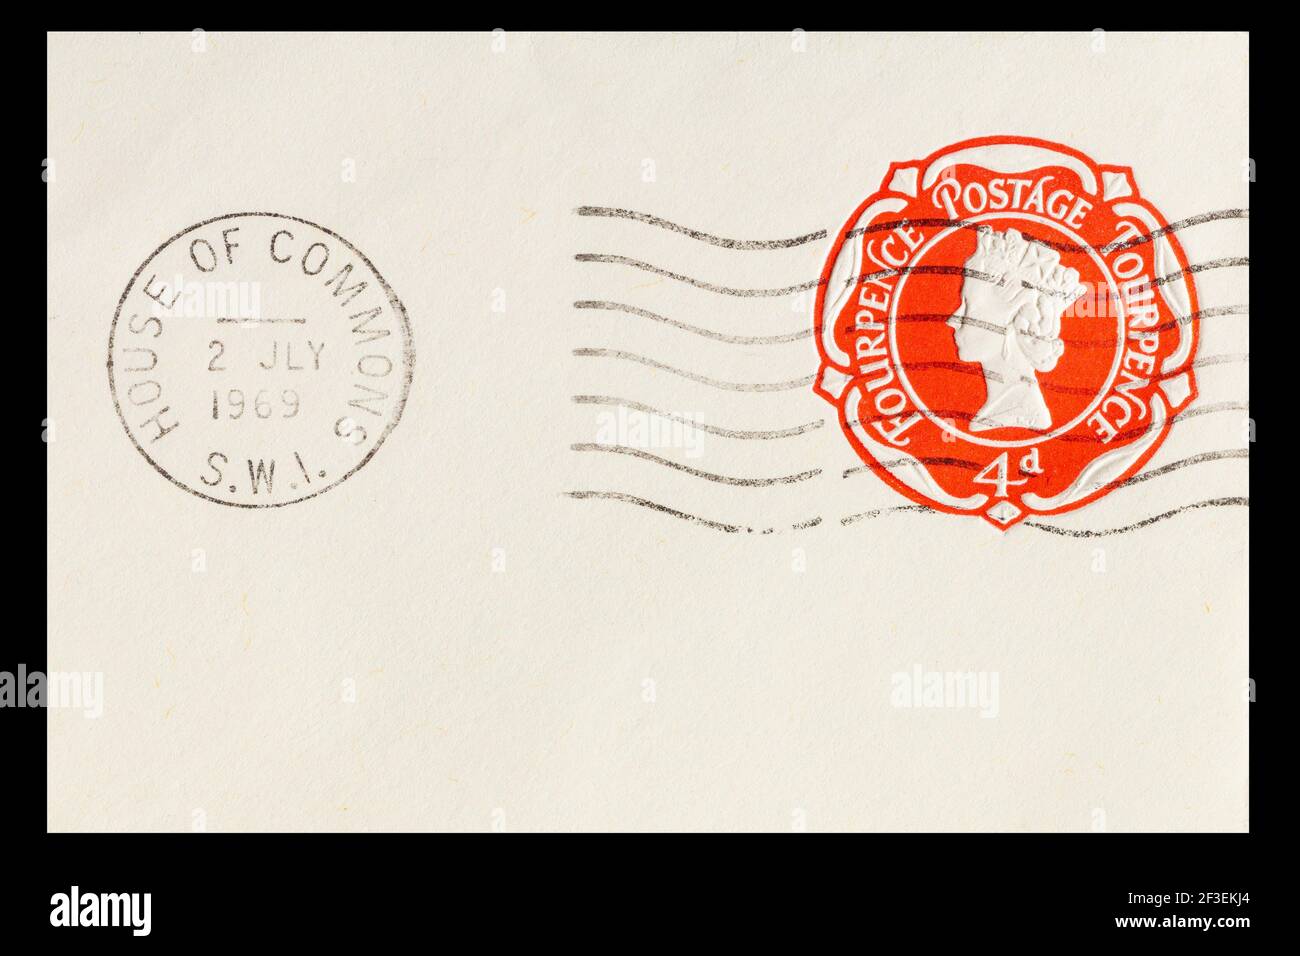 Vintage a annulé le timbre-poste 4D prépayé de Grande-Bretagne. Daté du 2 juillet 1969 et affiché à la Chambre des communes. Imprimé rouge clair avec détails fins Banque D'Images